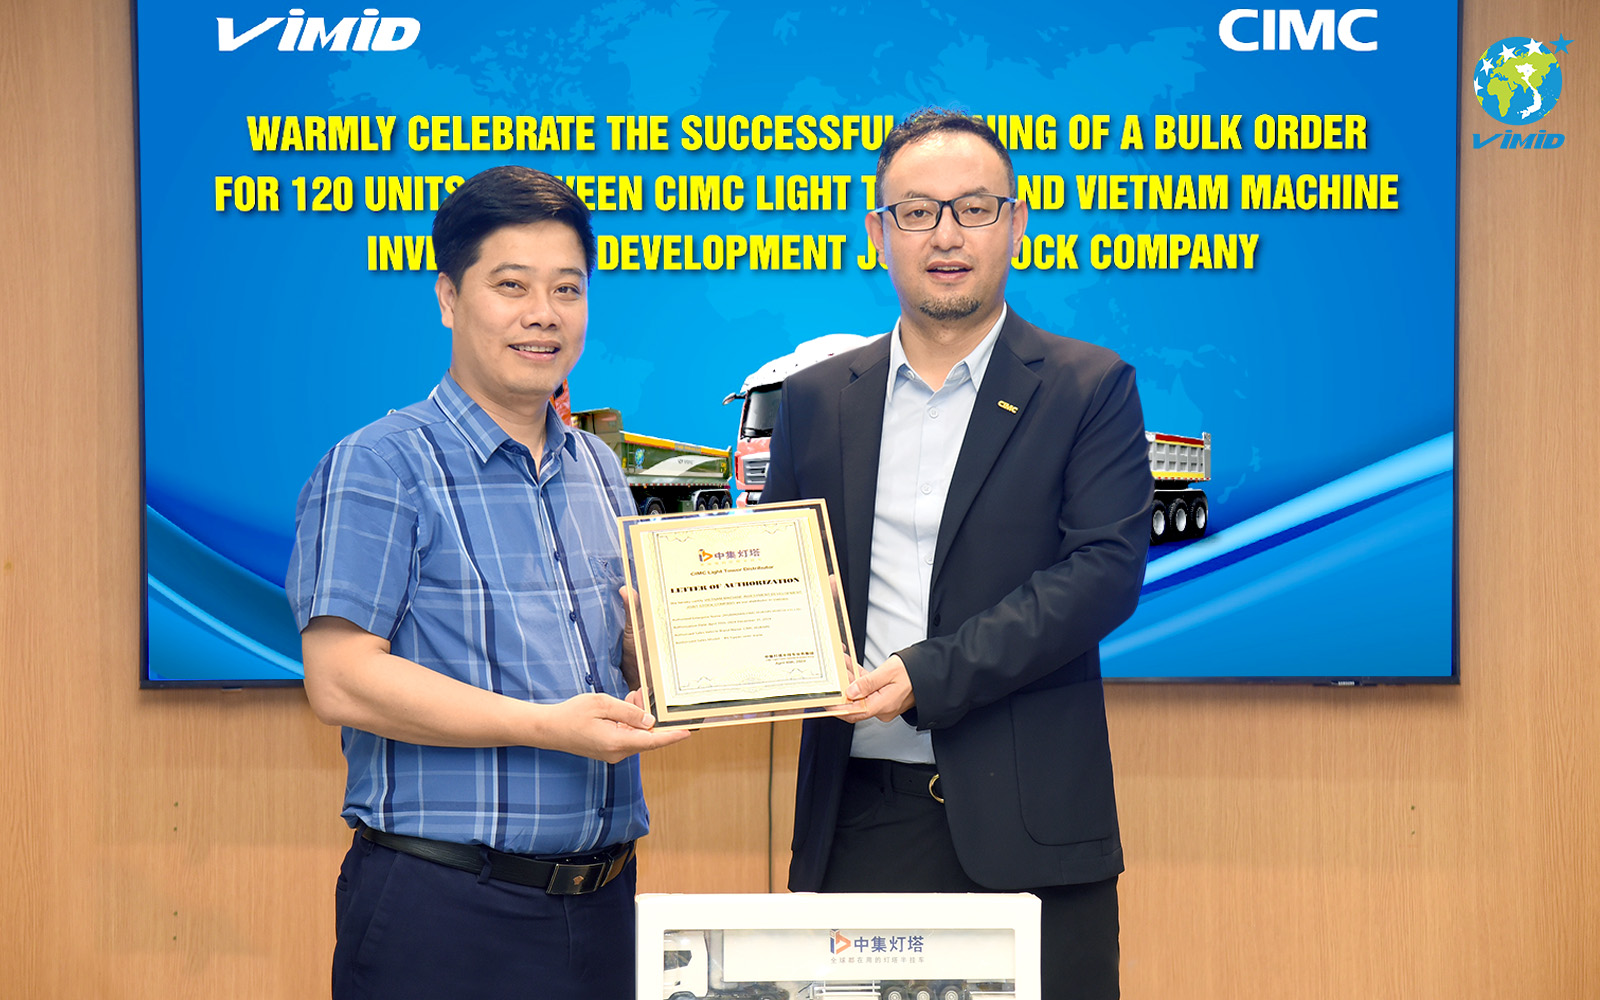 Ông Shu Lei - CEO thị trường Quốc tế Tập đoàn CIMC LIGHT TOWER trao ủy quyền phân phối sản phẩm chính hãng của CIMC cho VIMID và đại diện VIMID, Ông Nguyễn Vũ Trụ - Giám đốc VIMID nhận chứng nhận ủy quyền.